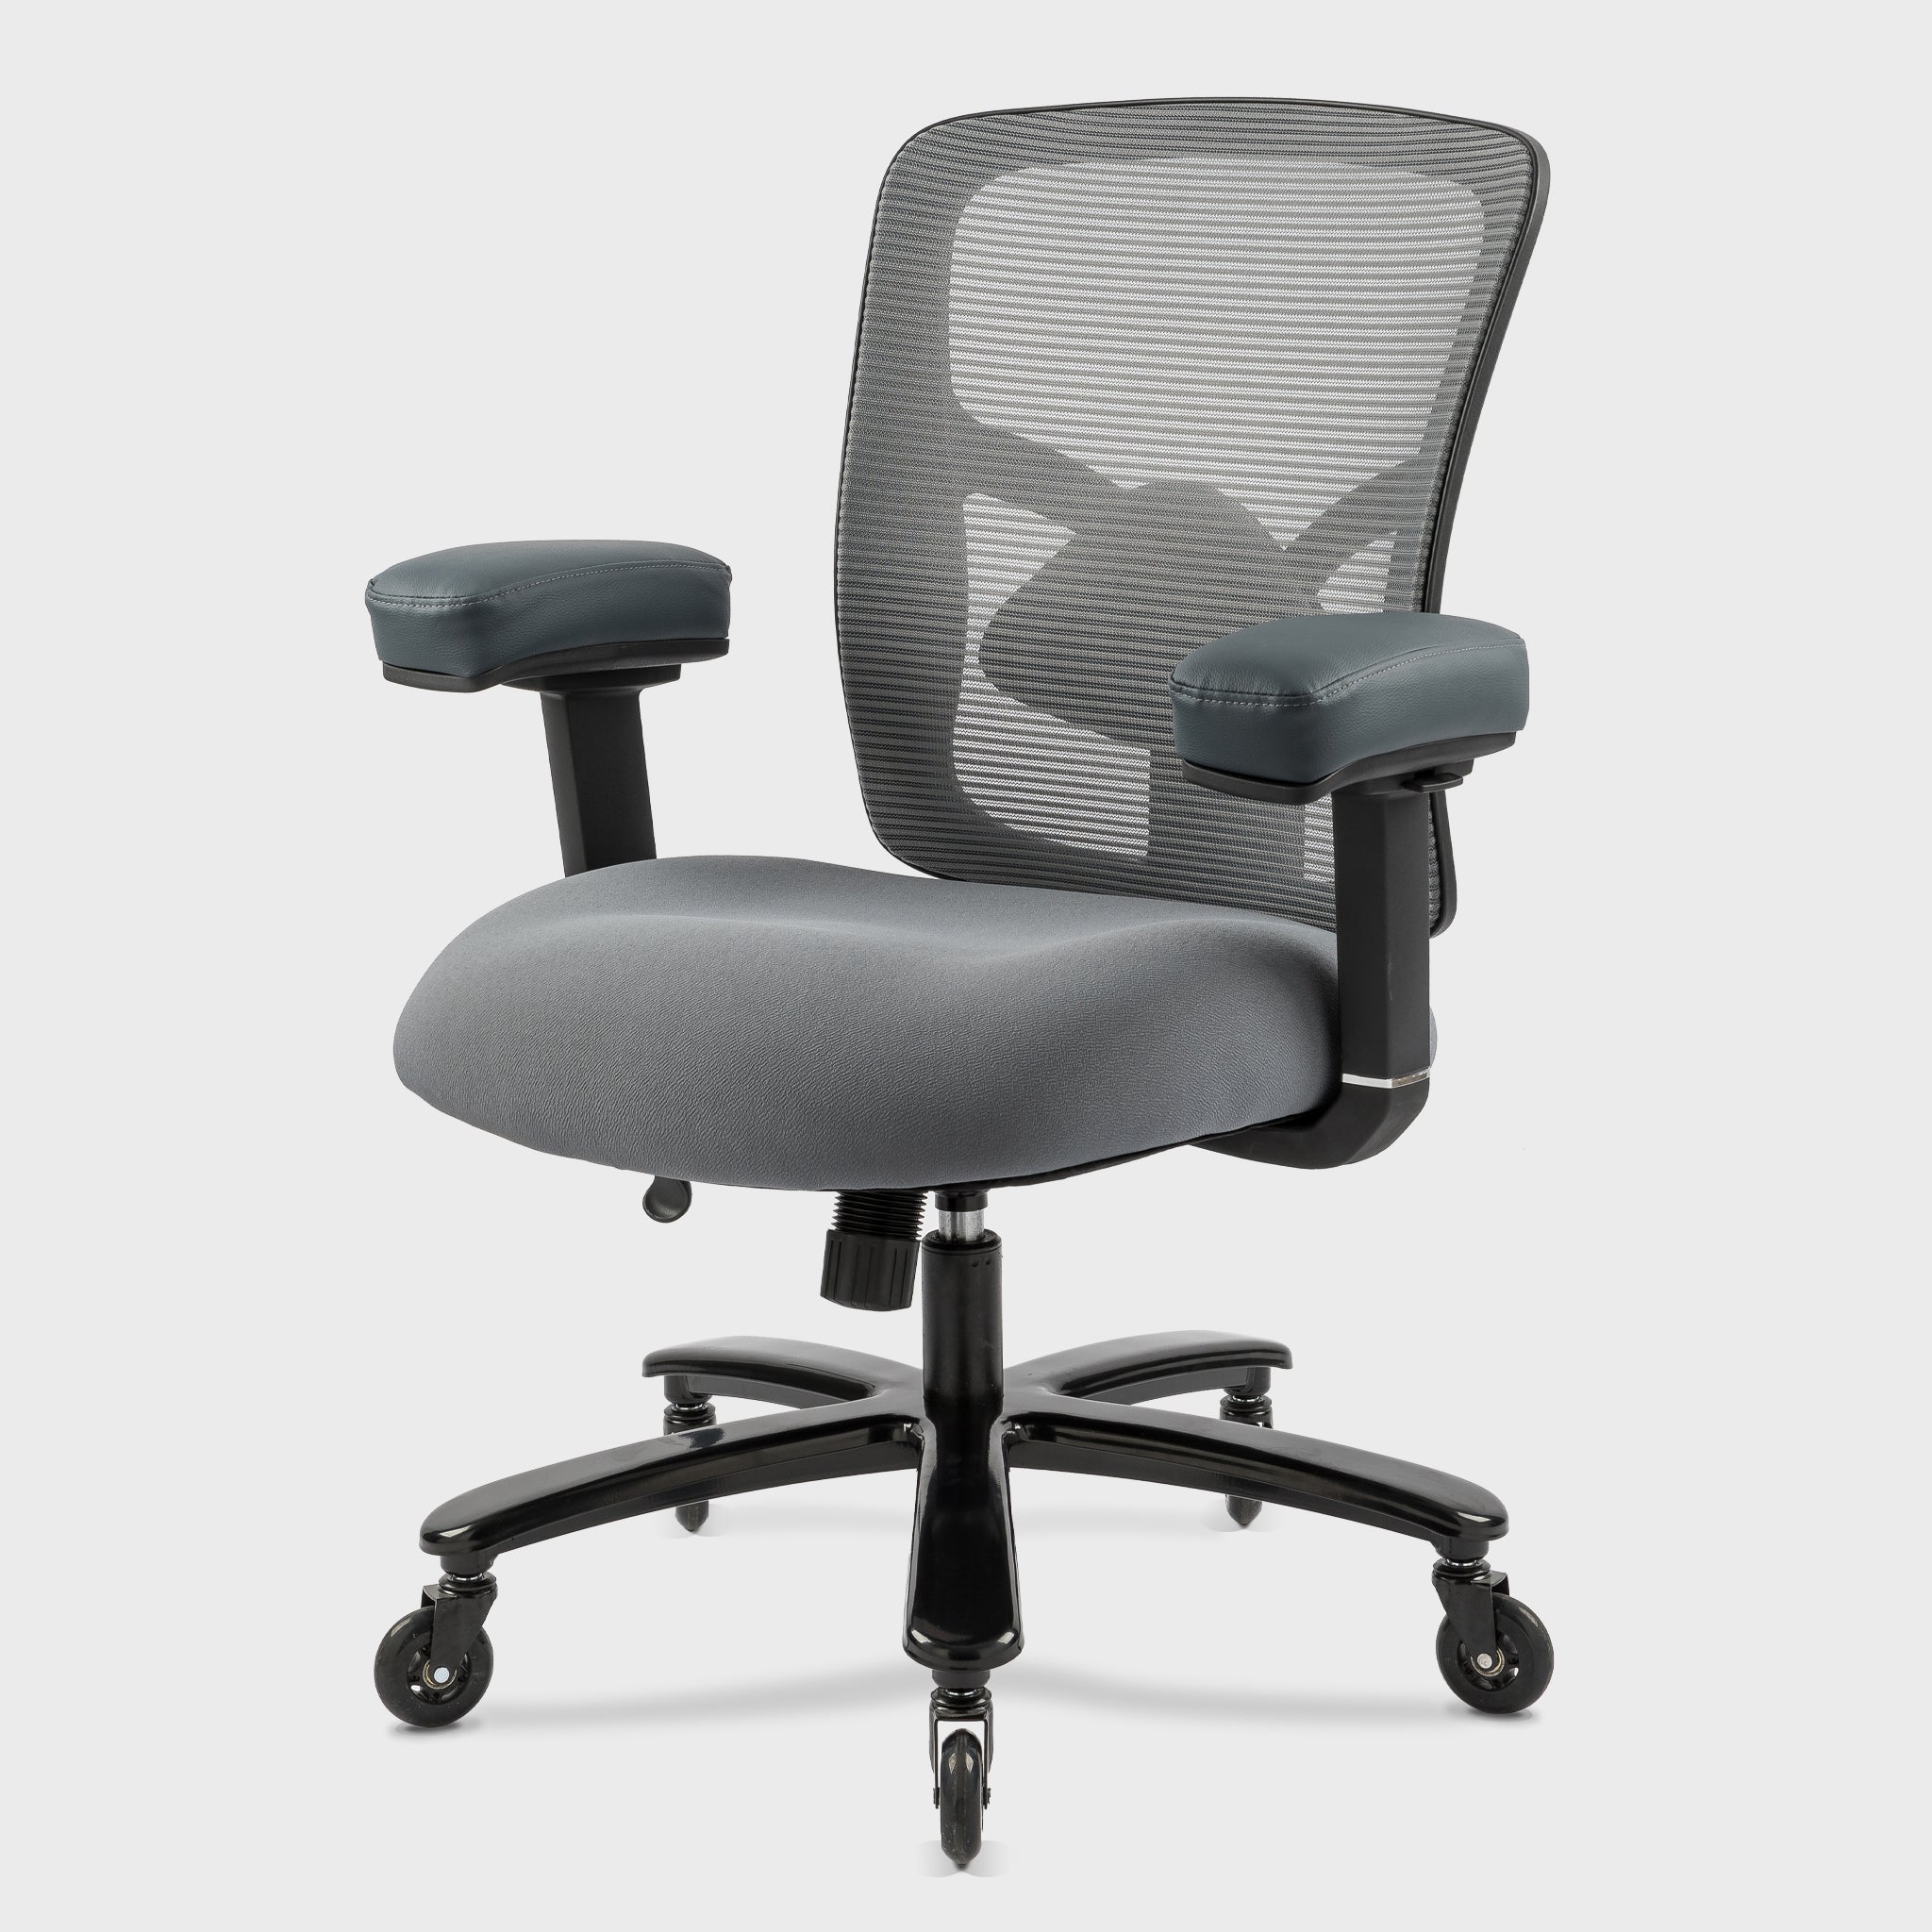 Ergonomic Office Chair Pro 5127